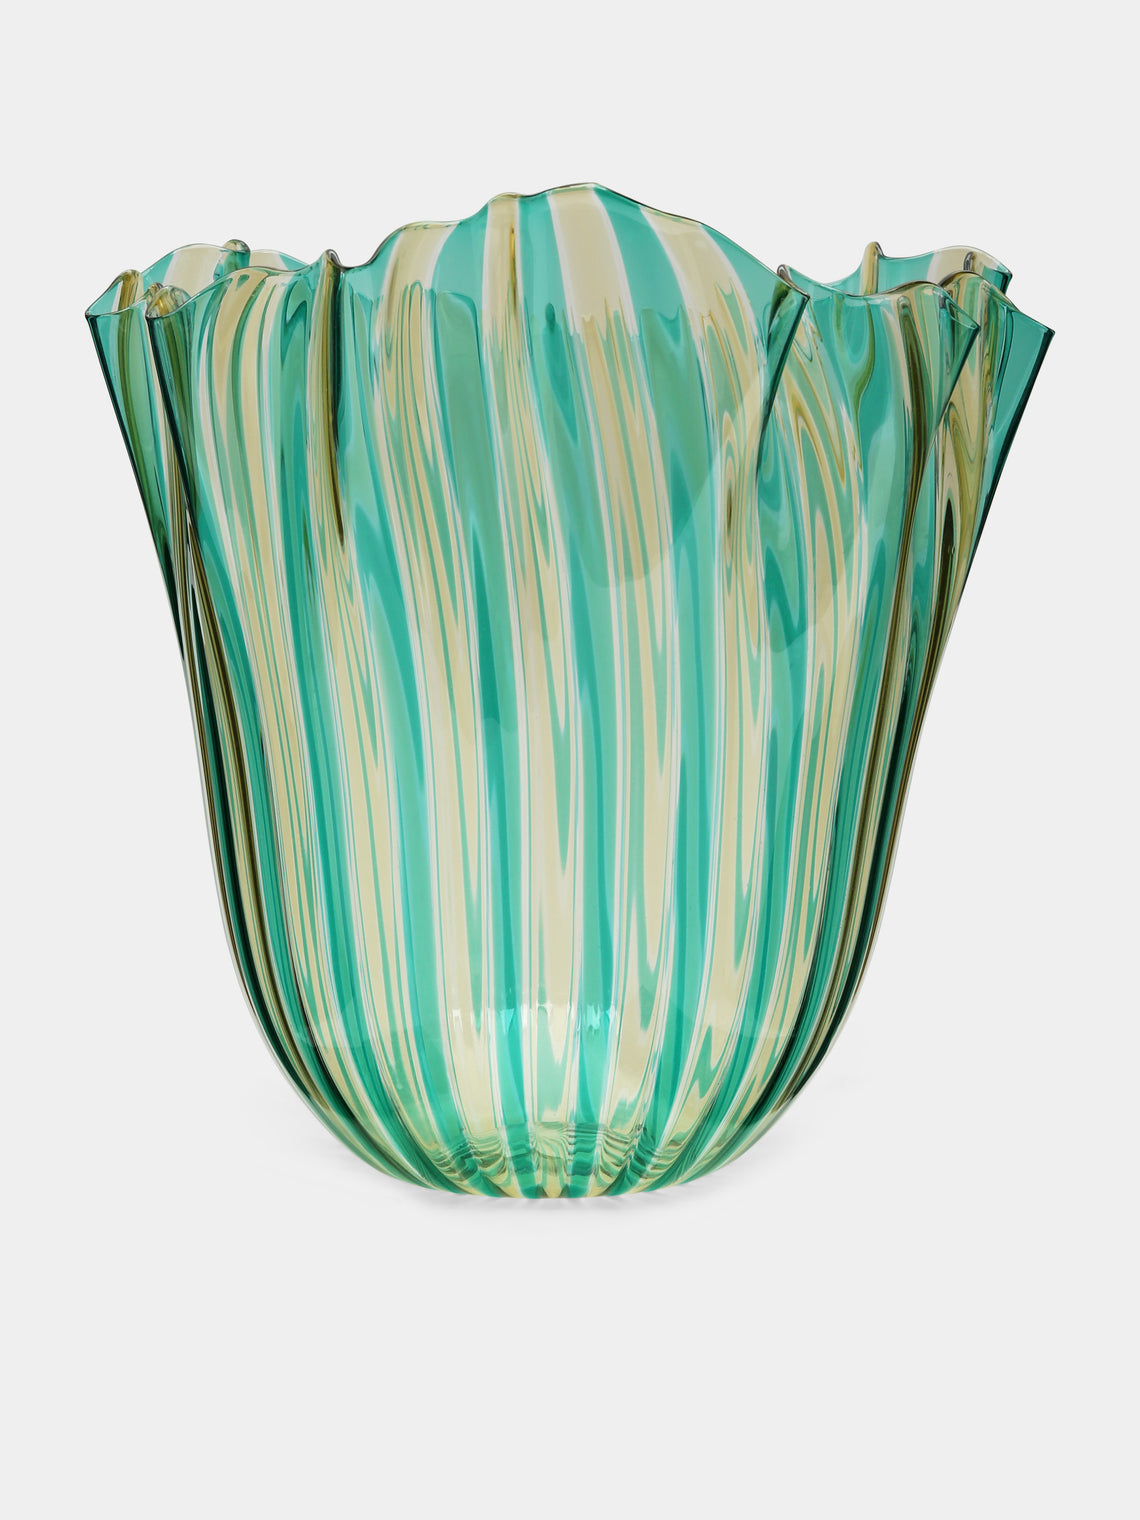 Venini - Fazzoletto a Canne Hand-Blown Murano Glass Large Vase - Green - ABASK - 